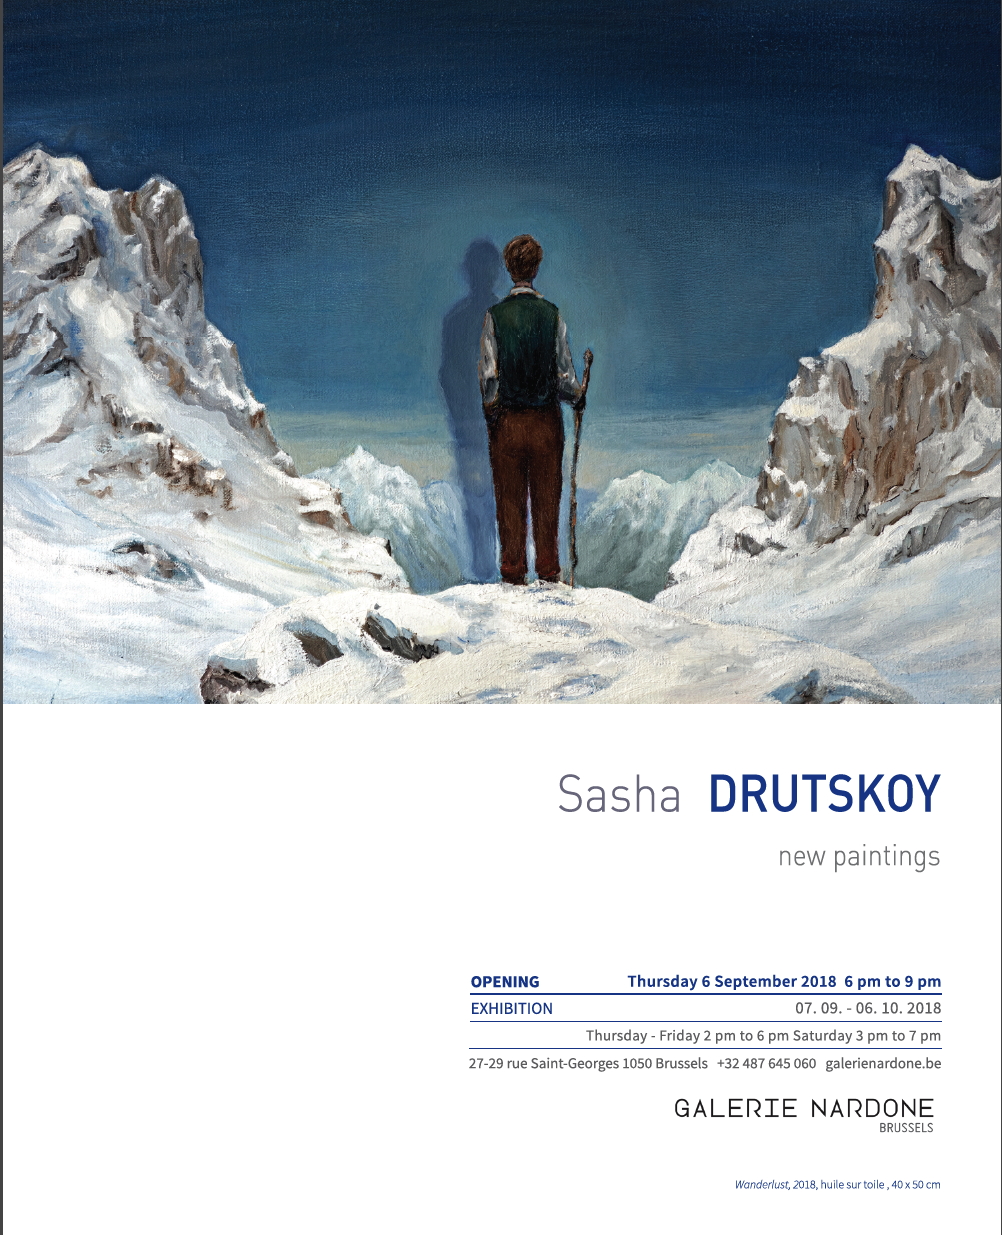 Sasha Drutskoy - New paintings.